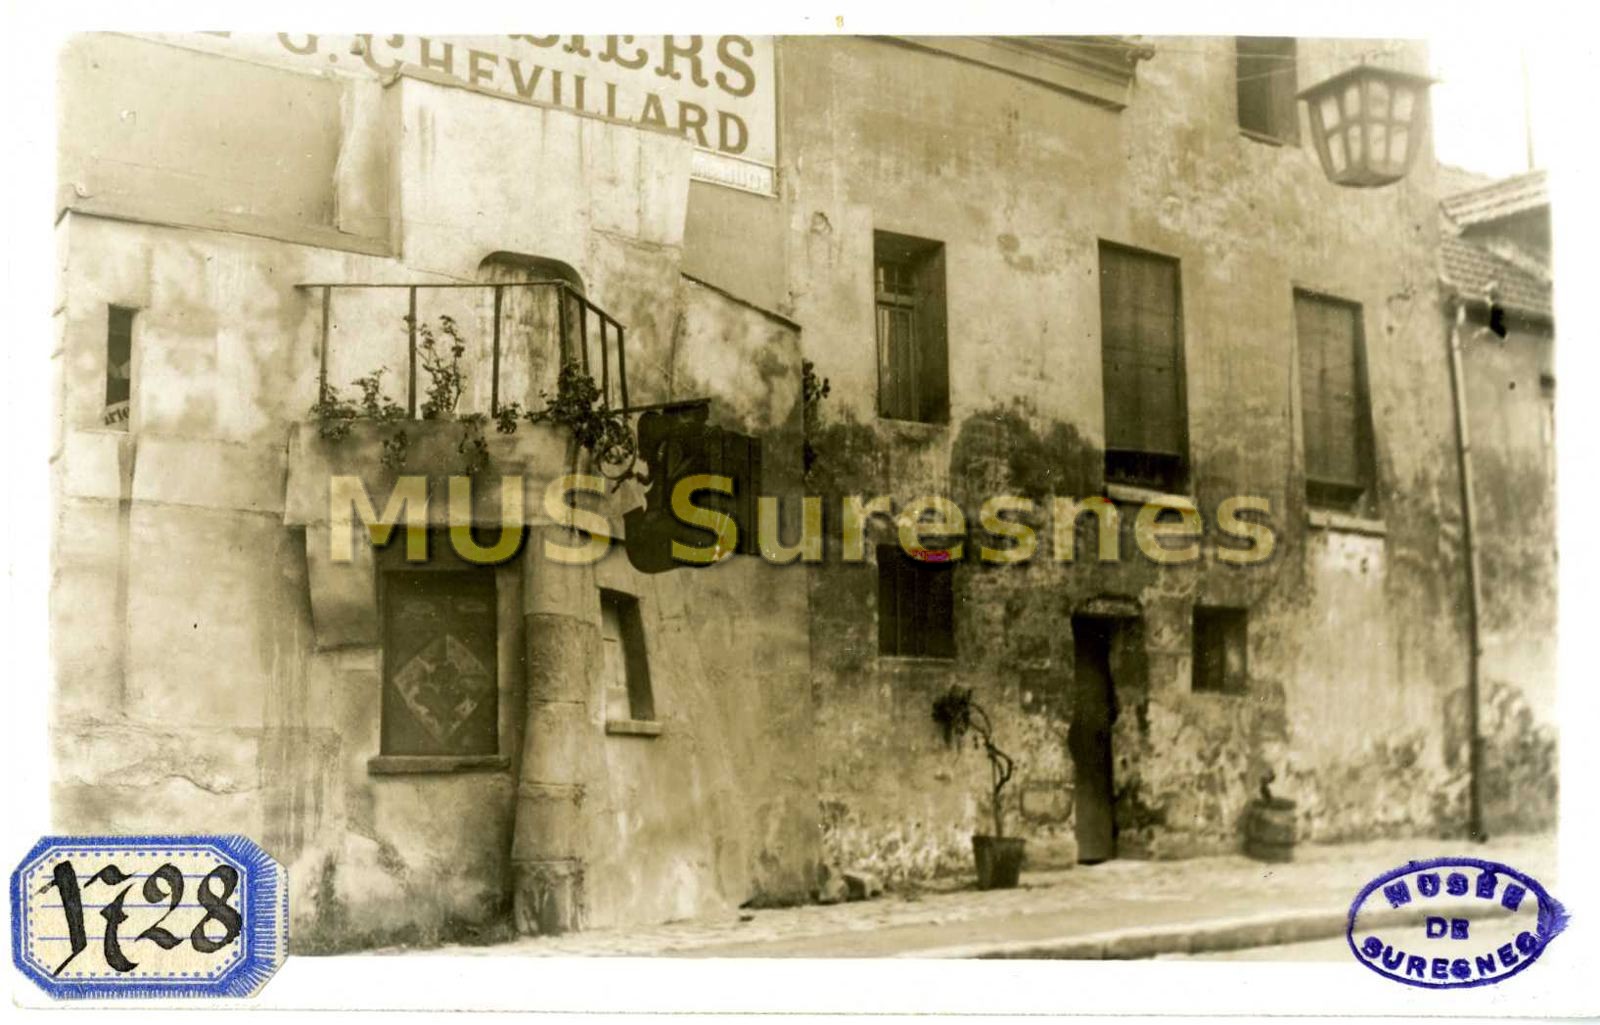 Le vieux Suresnes, rue Scheurer : reconstitution